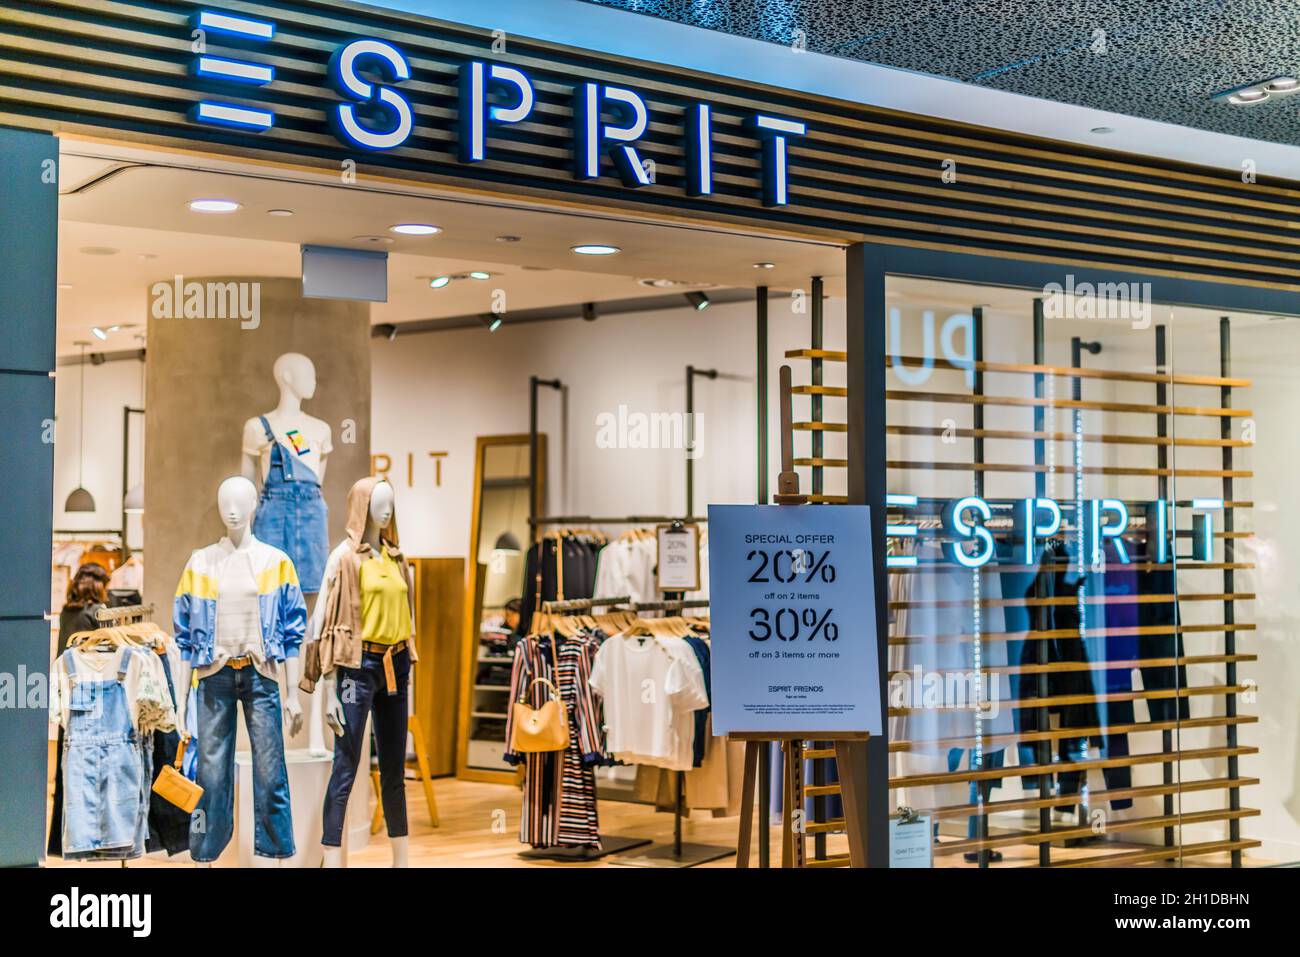 SINGAPUR - 5. MÄRZ 2020: Vordereingang zum Esprit-Laden im Einkaufszentrum  von Singapur Stockfotografie - Alamy